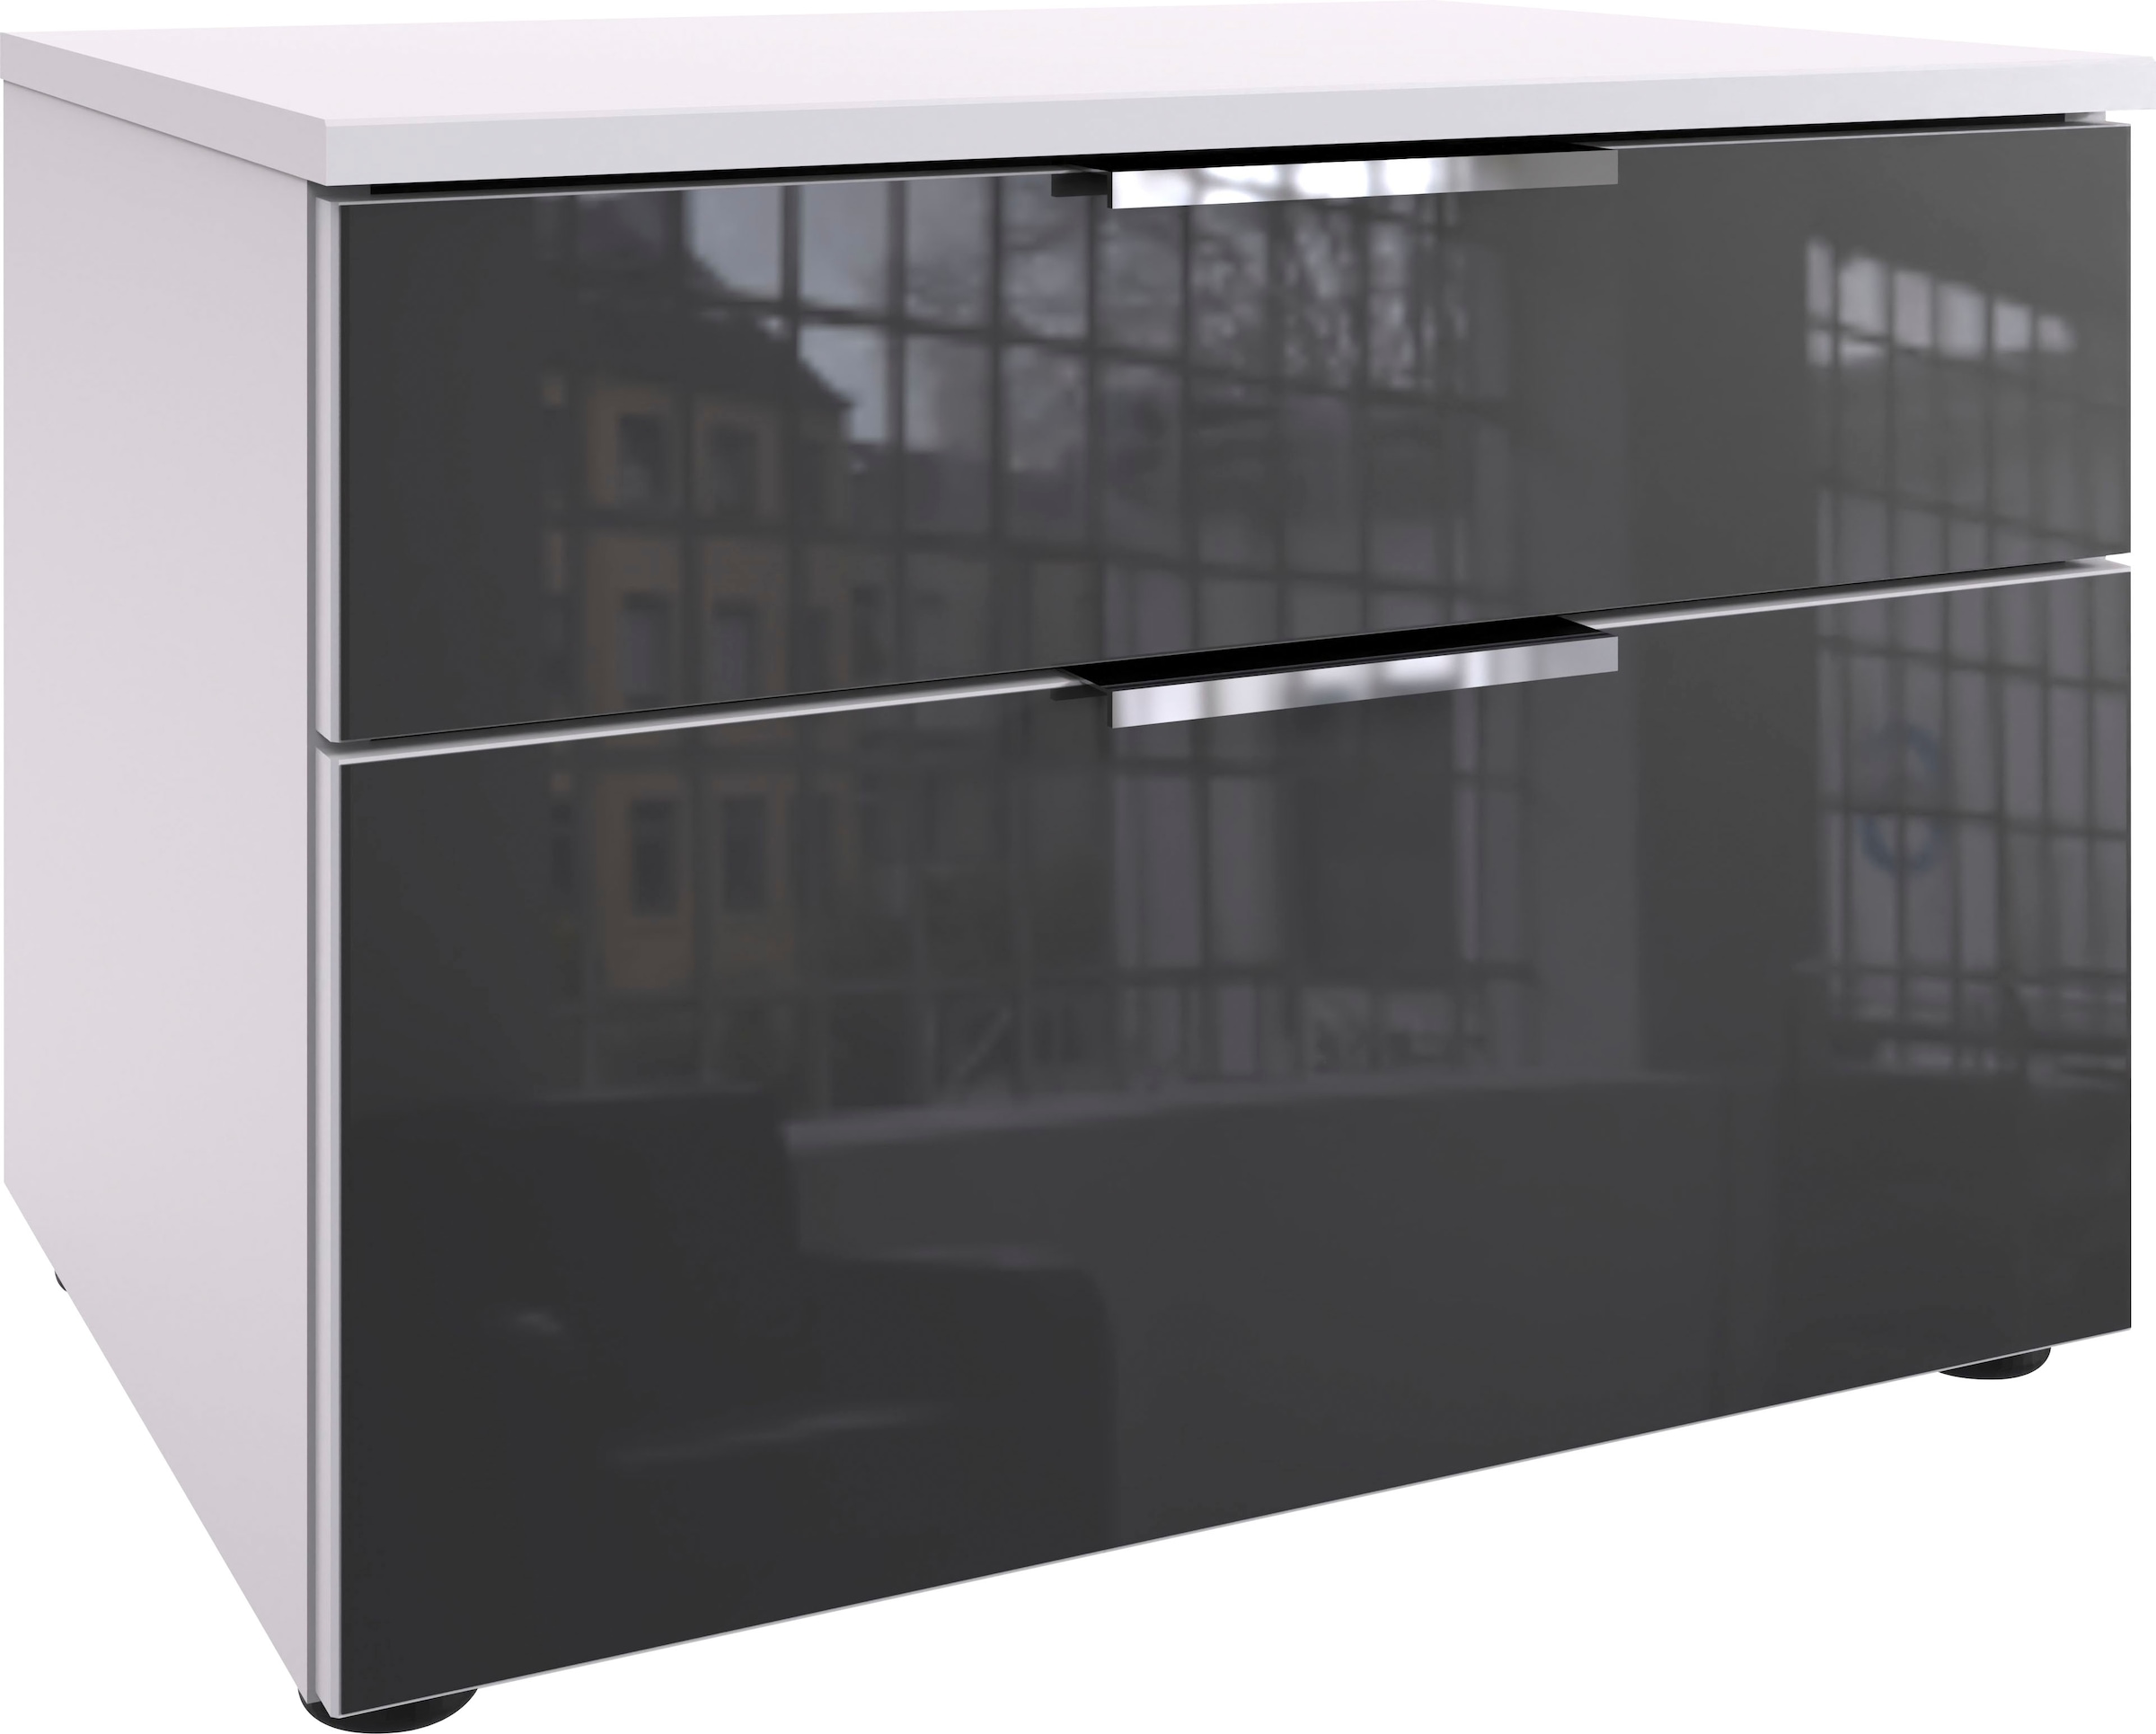 Wimex Nachtkommode »Level36 C by fresh to go«, mit Glaselementen auf der Front, soft-close Funktion, 54cm breit